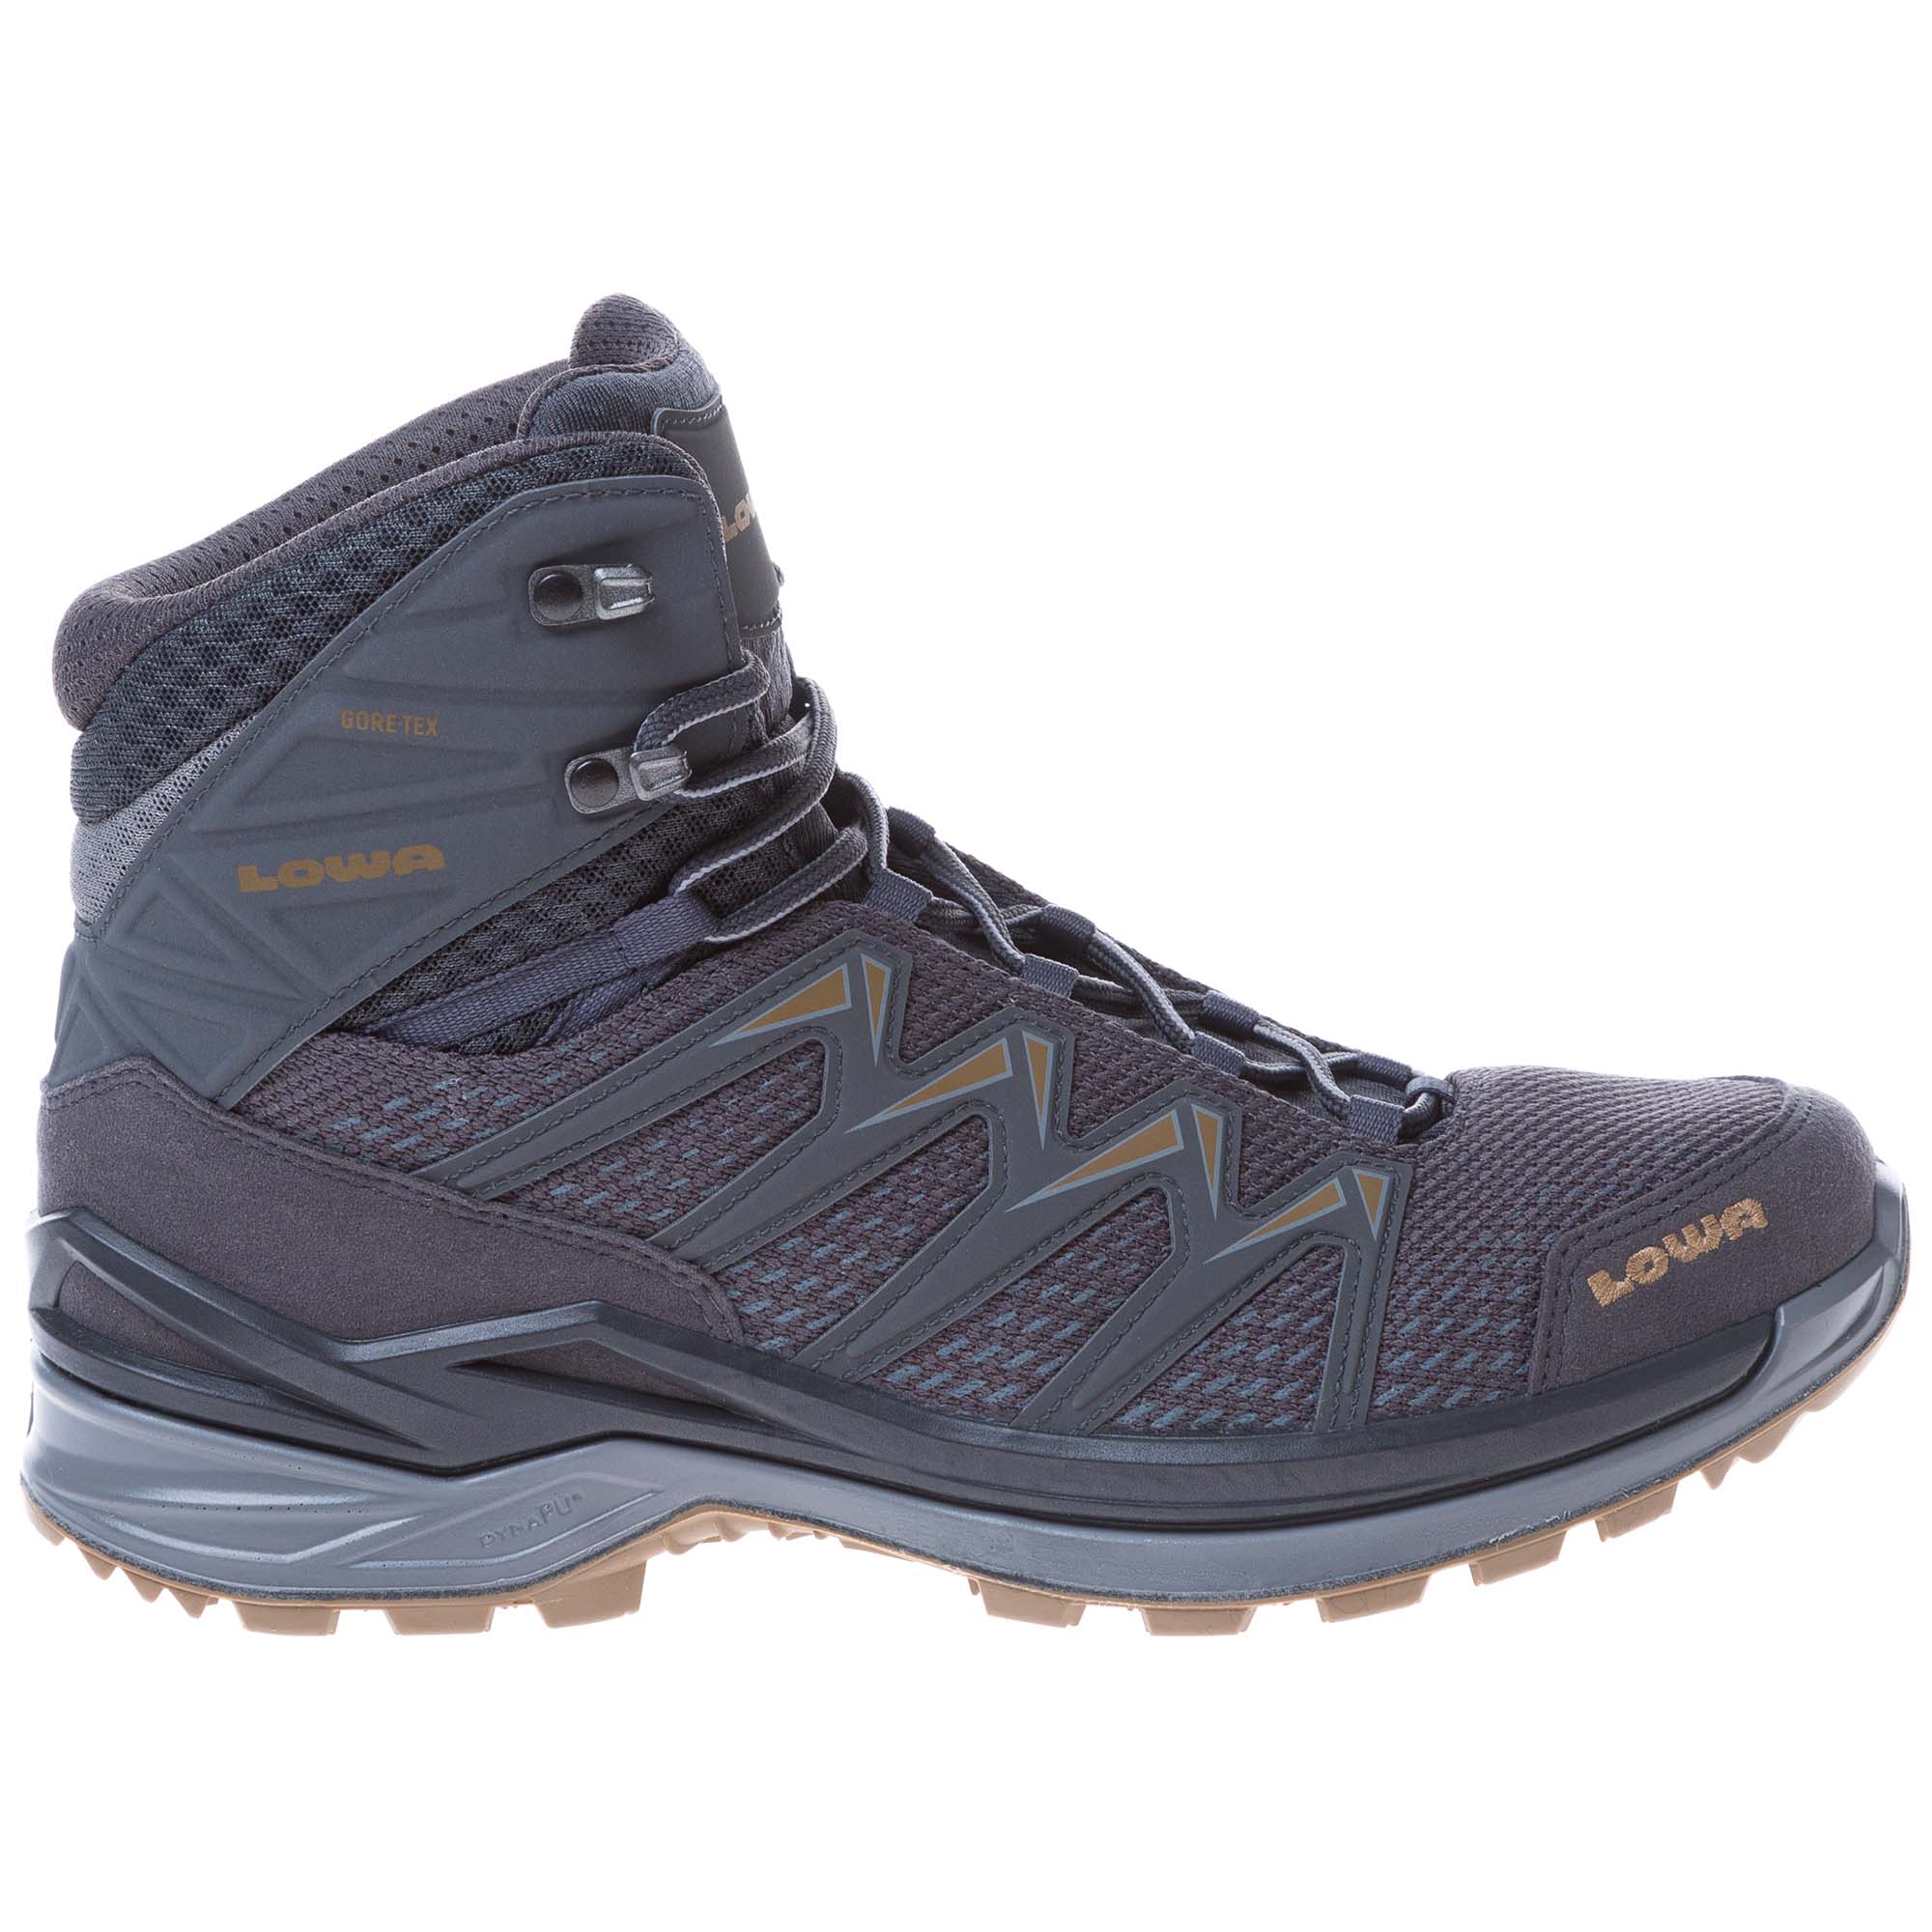 Lowa Innox Pro GTX Mid Men's Gore-Tex Hiking Boots